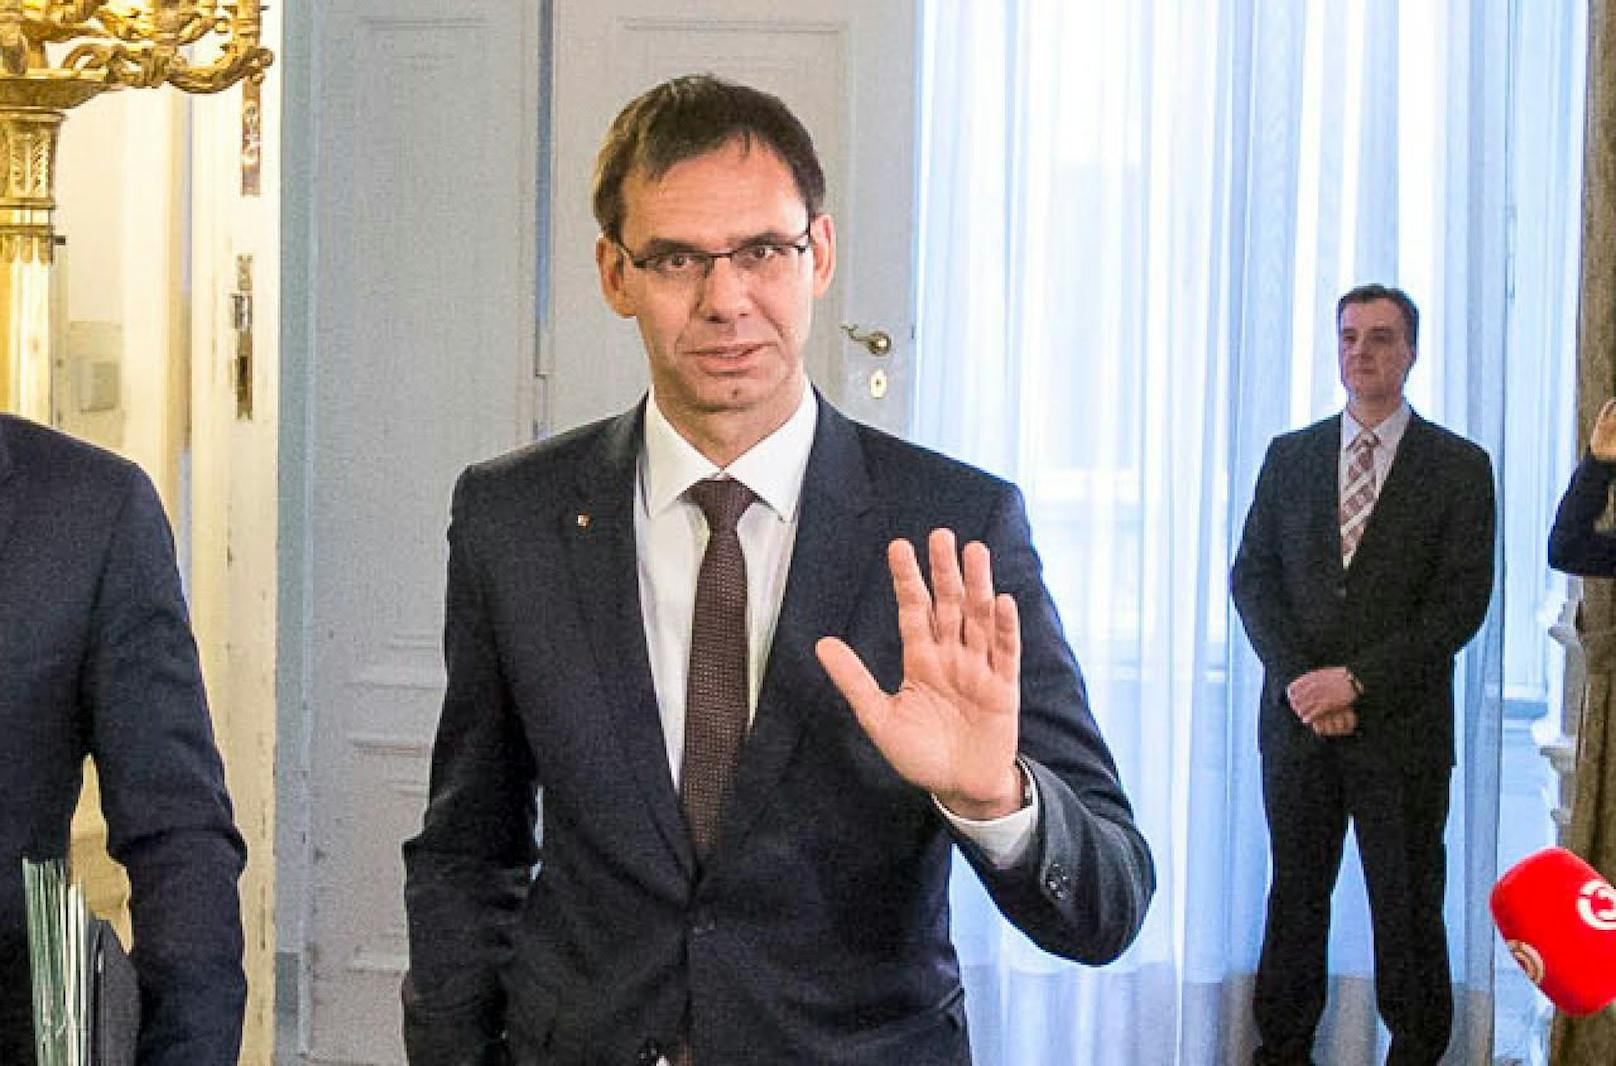 Vorarlbergs ÖVP-Landeshauptmann Markus Wallner will die Mindestsicherung begrenzen.